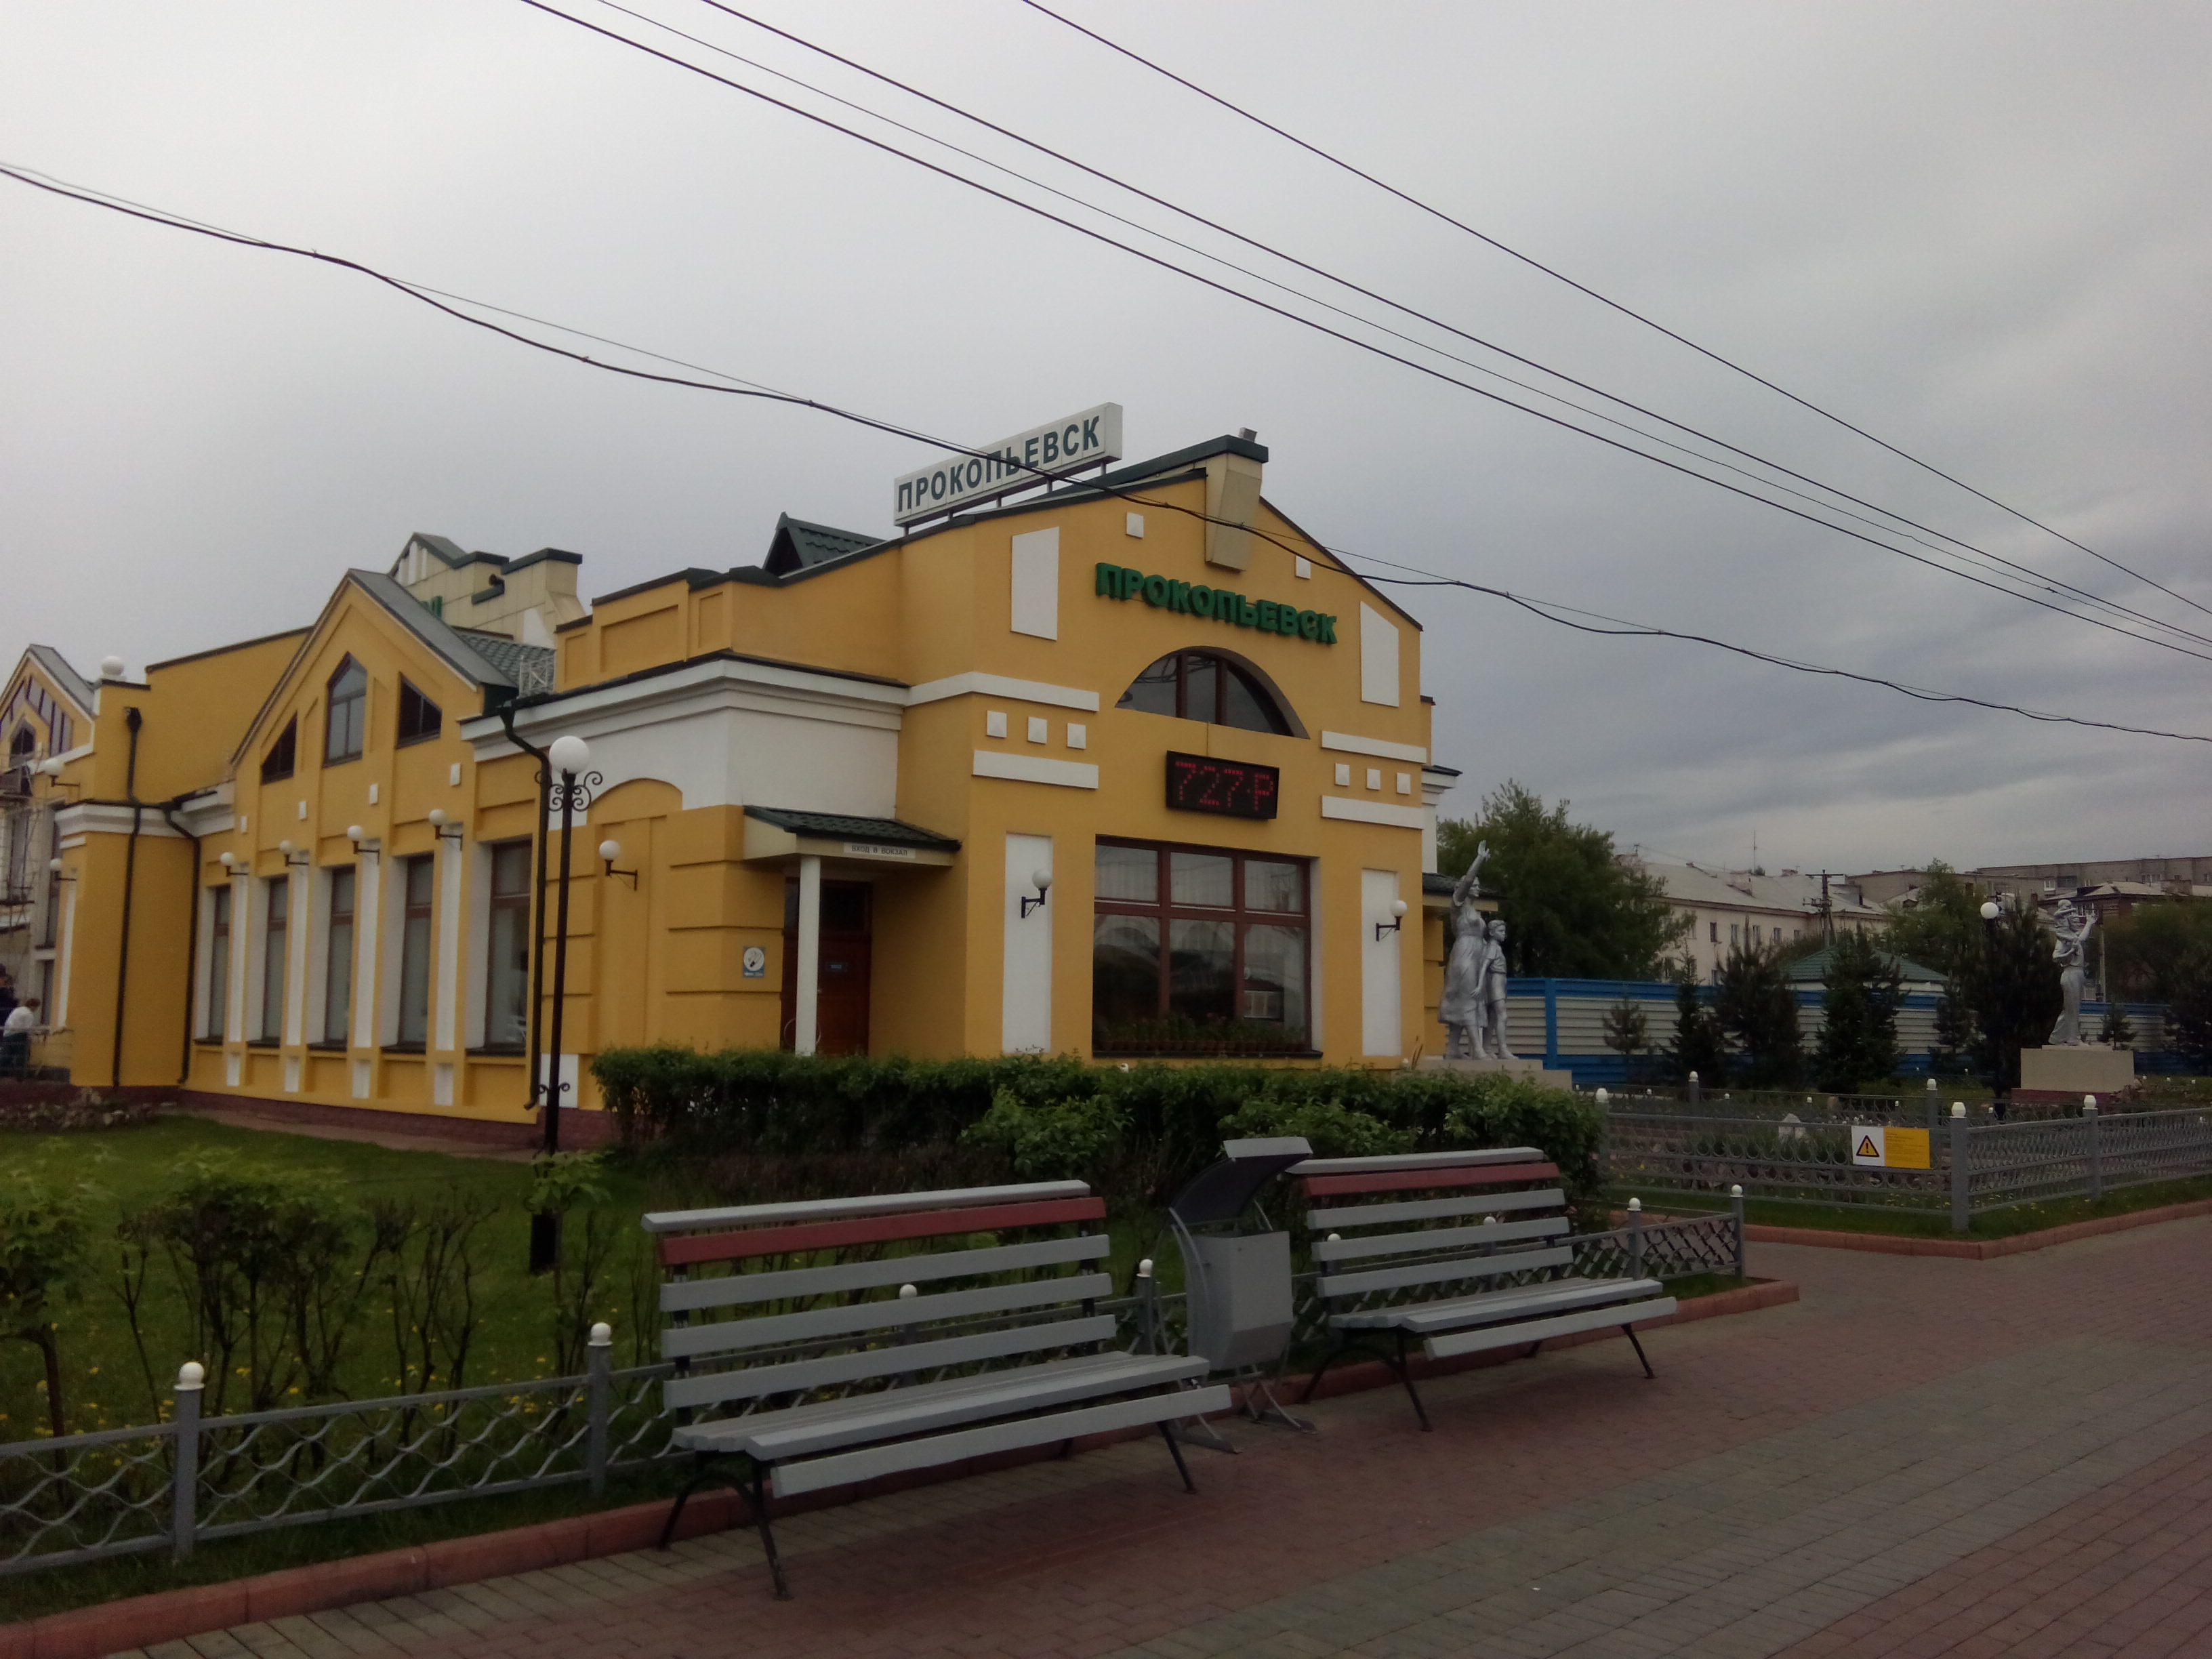 Вокзал Прокопьевск